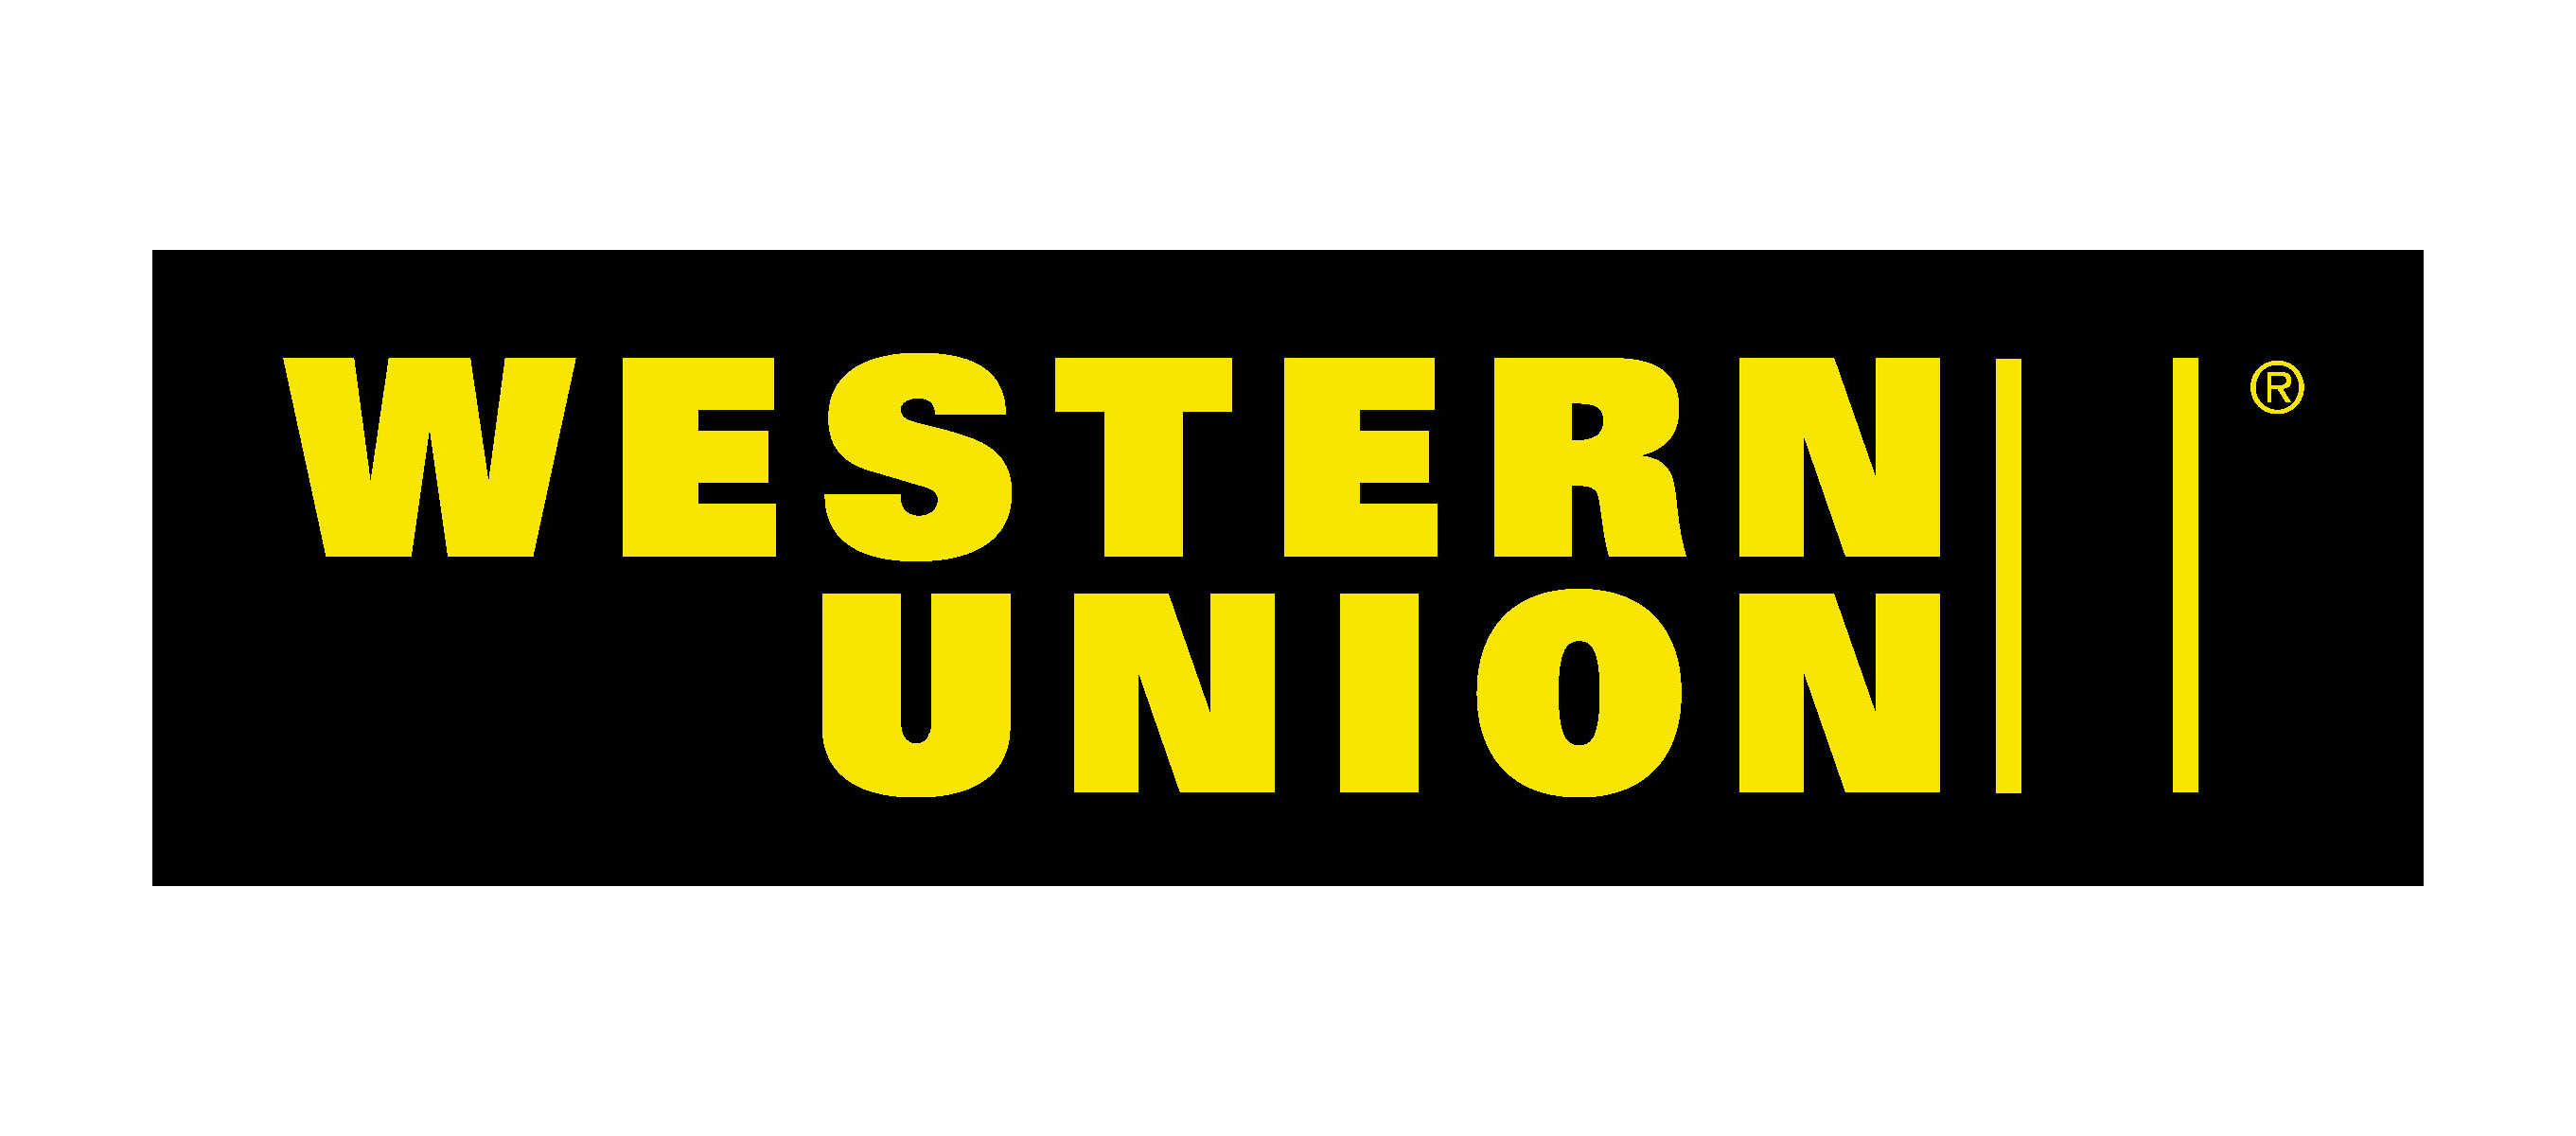 Westernunion Logo - Western Union Logo